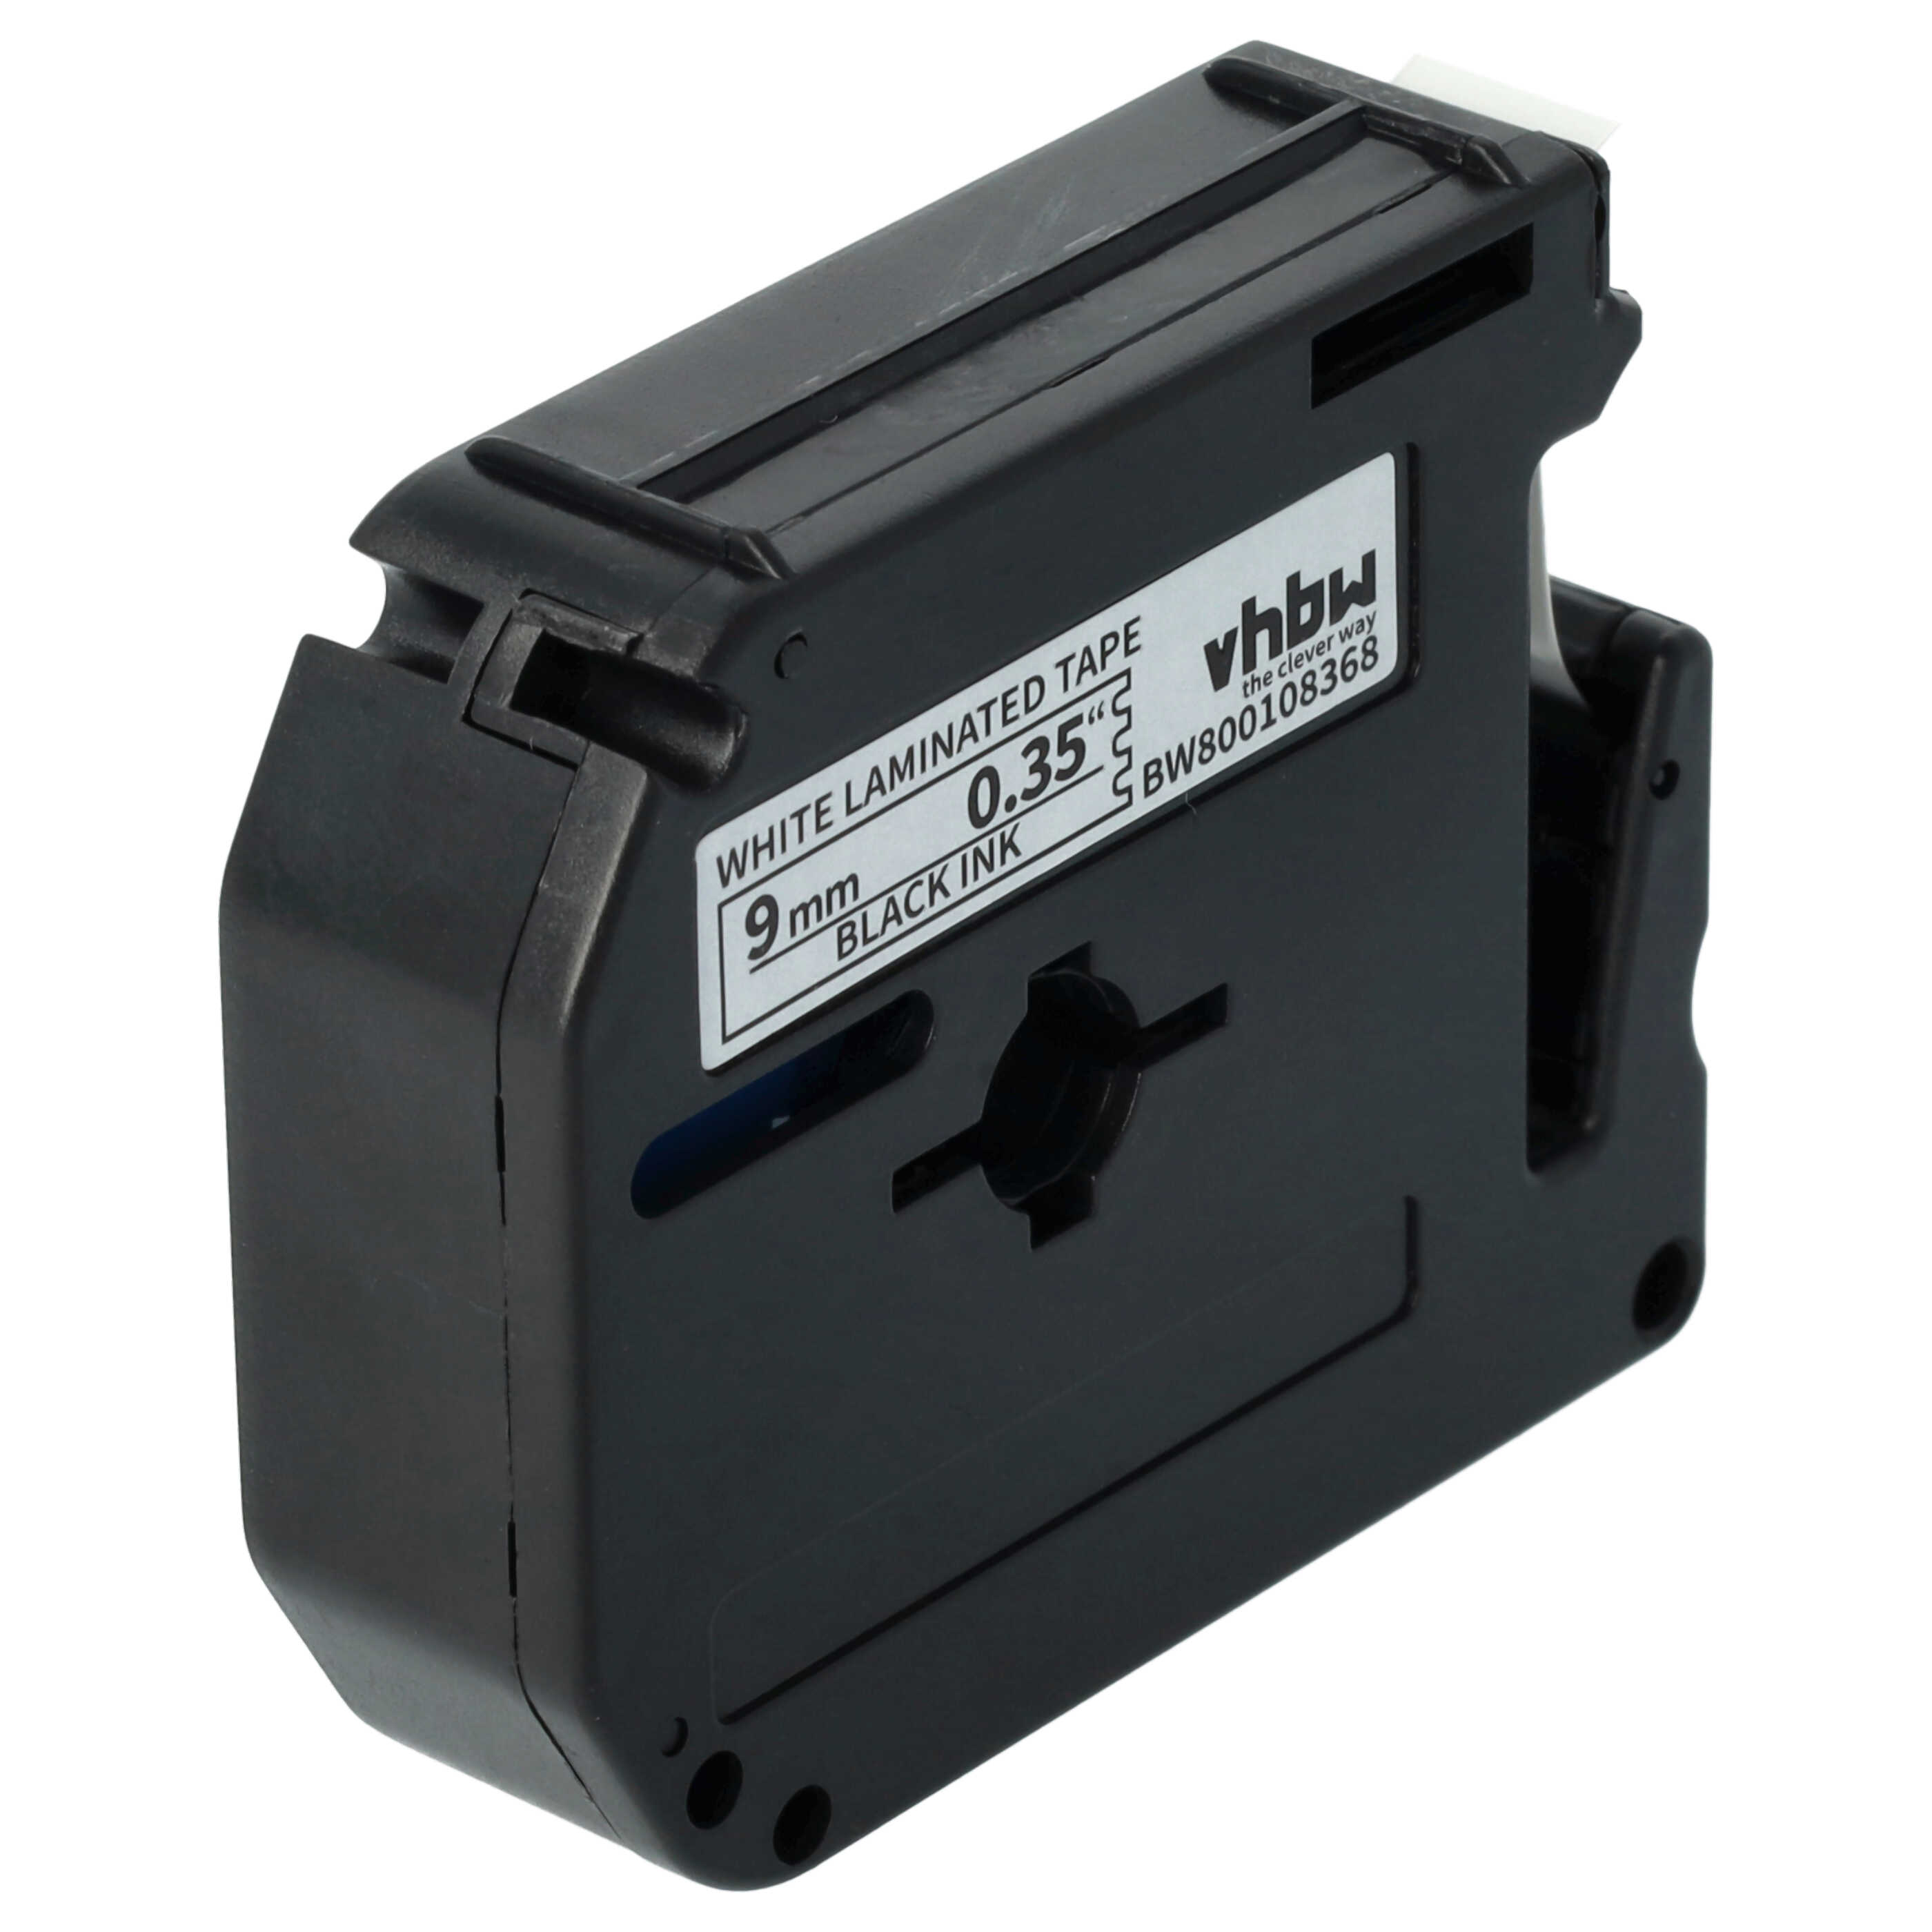 10x Cassetta nastro sostituisce Brother M-K221 per etichettatrice Brother 9mm nero su bianco